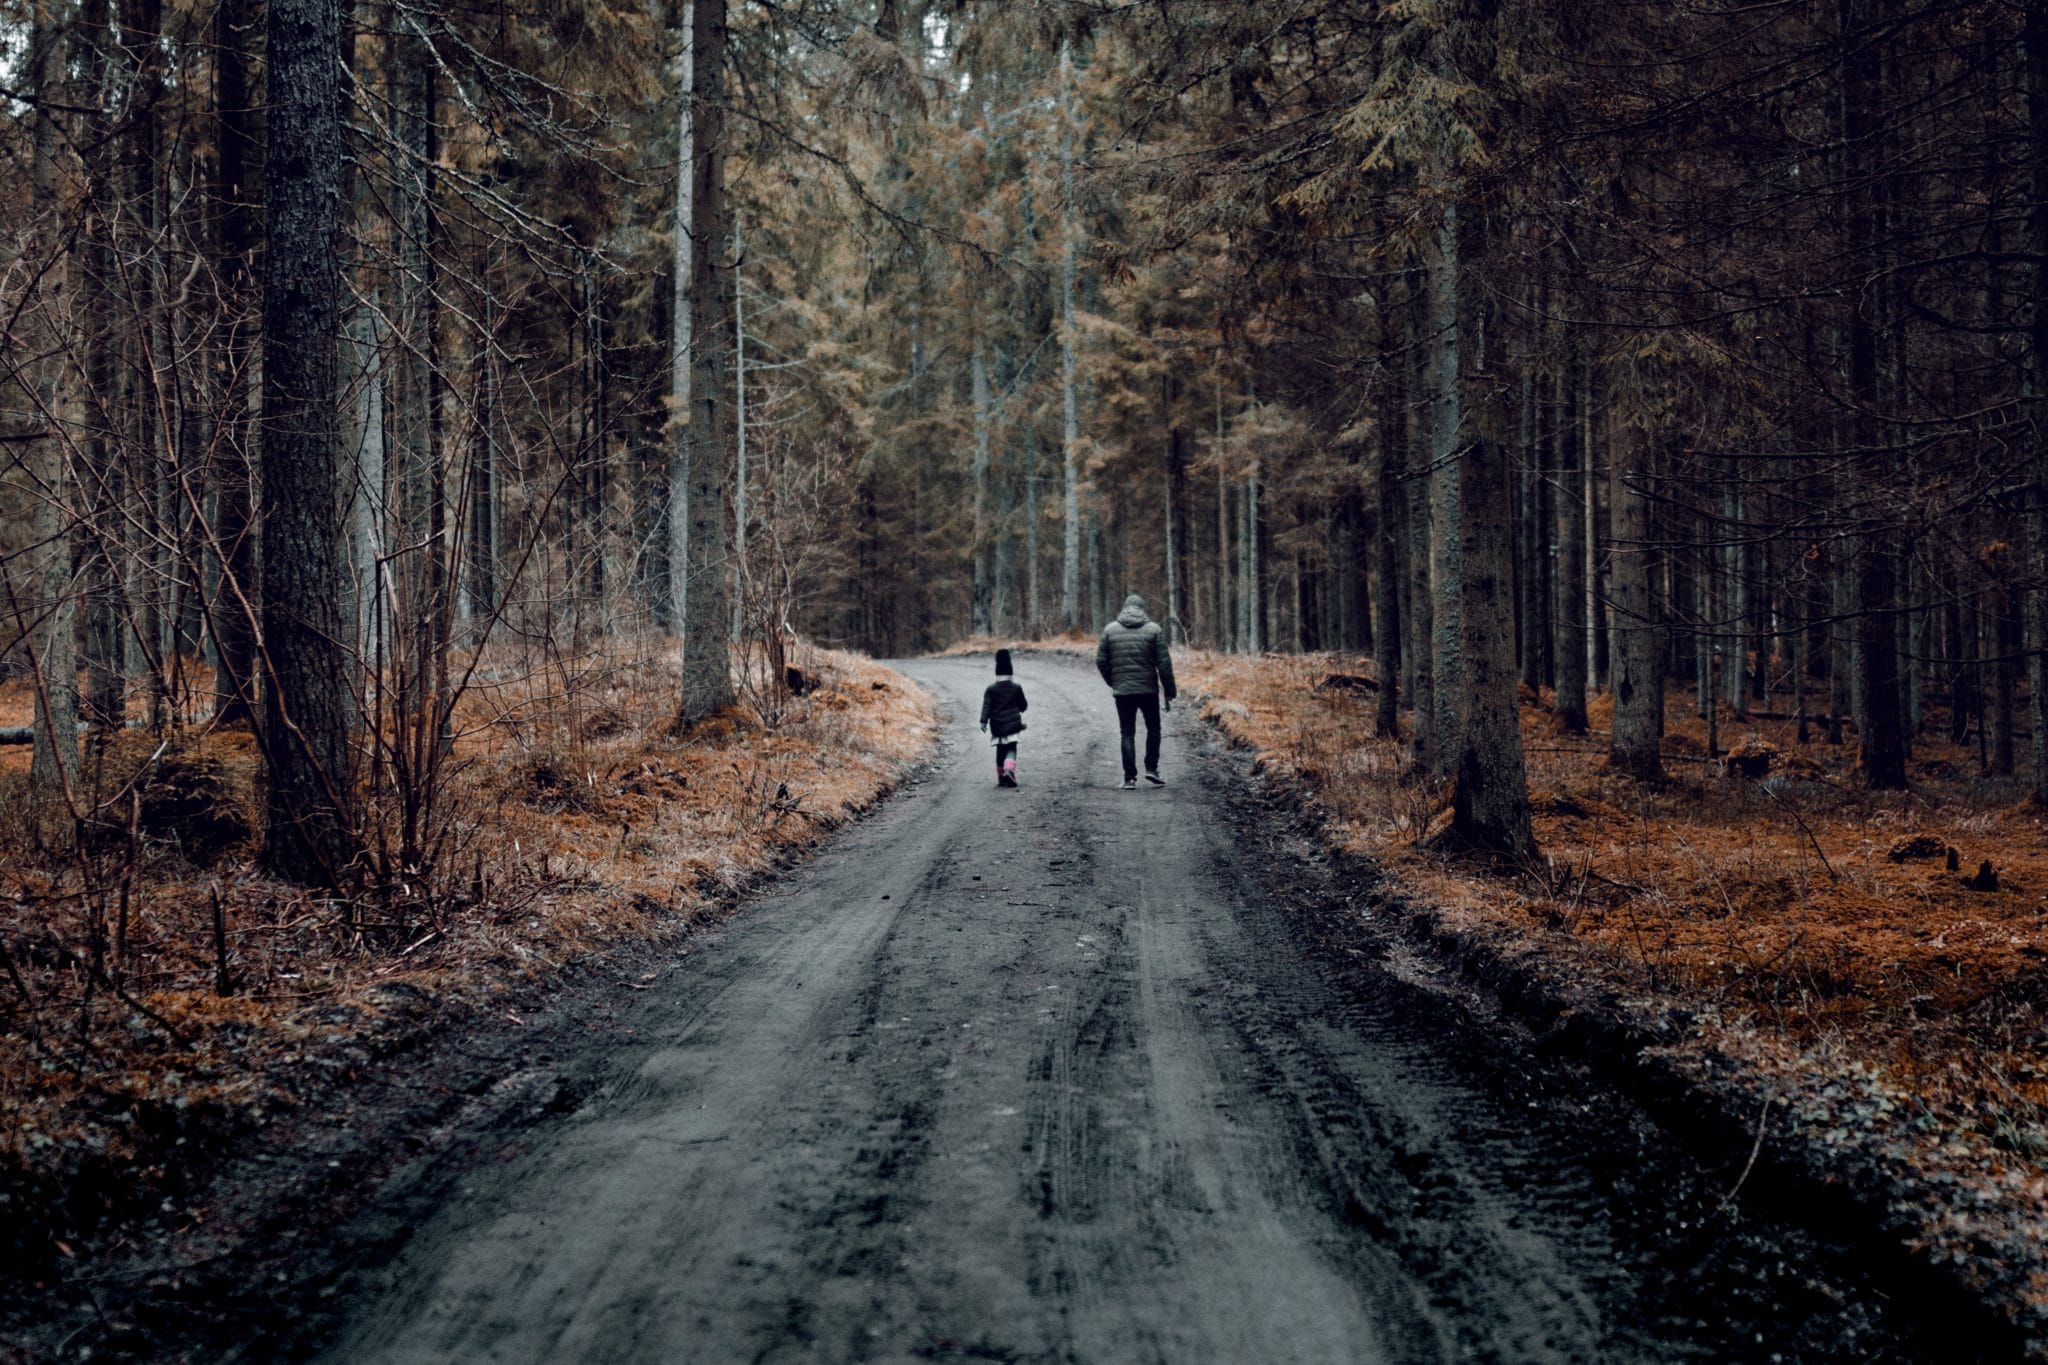 two-people-walking-on-road-between-trees-3708444